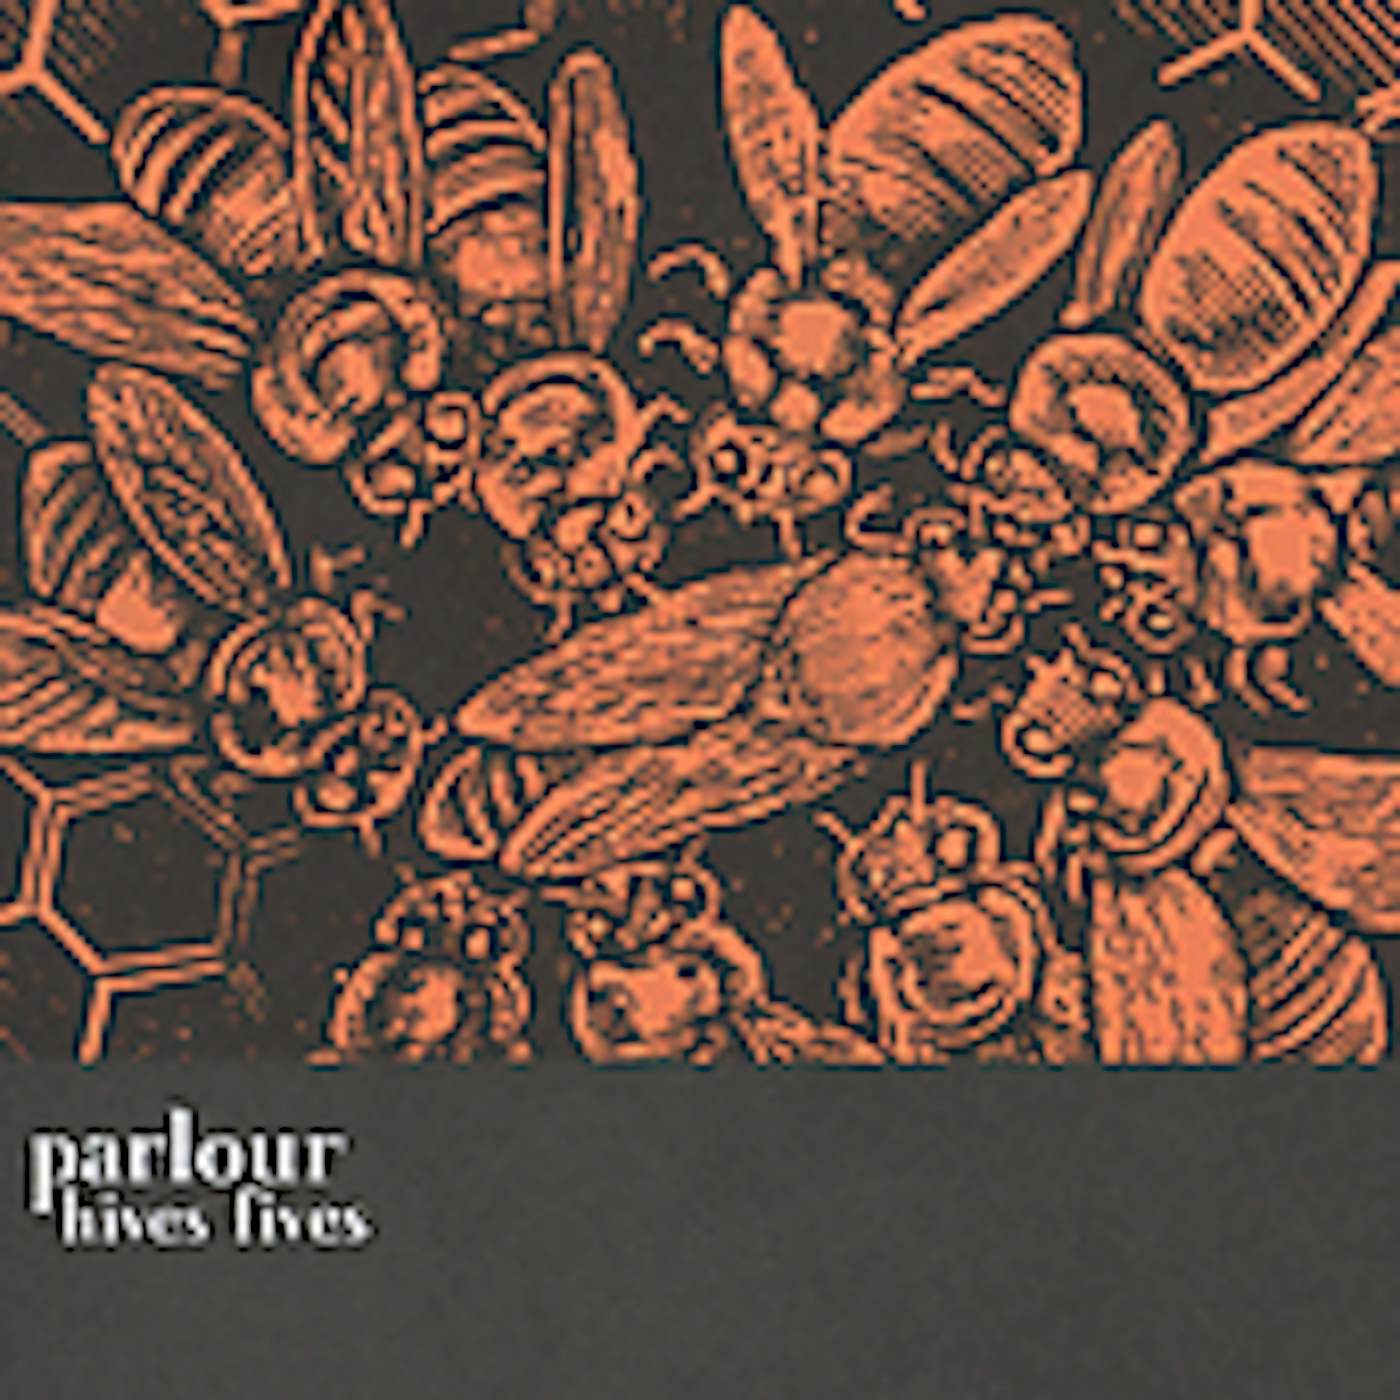 Parlour HIVES FIVES CD